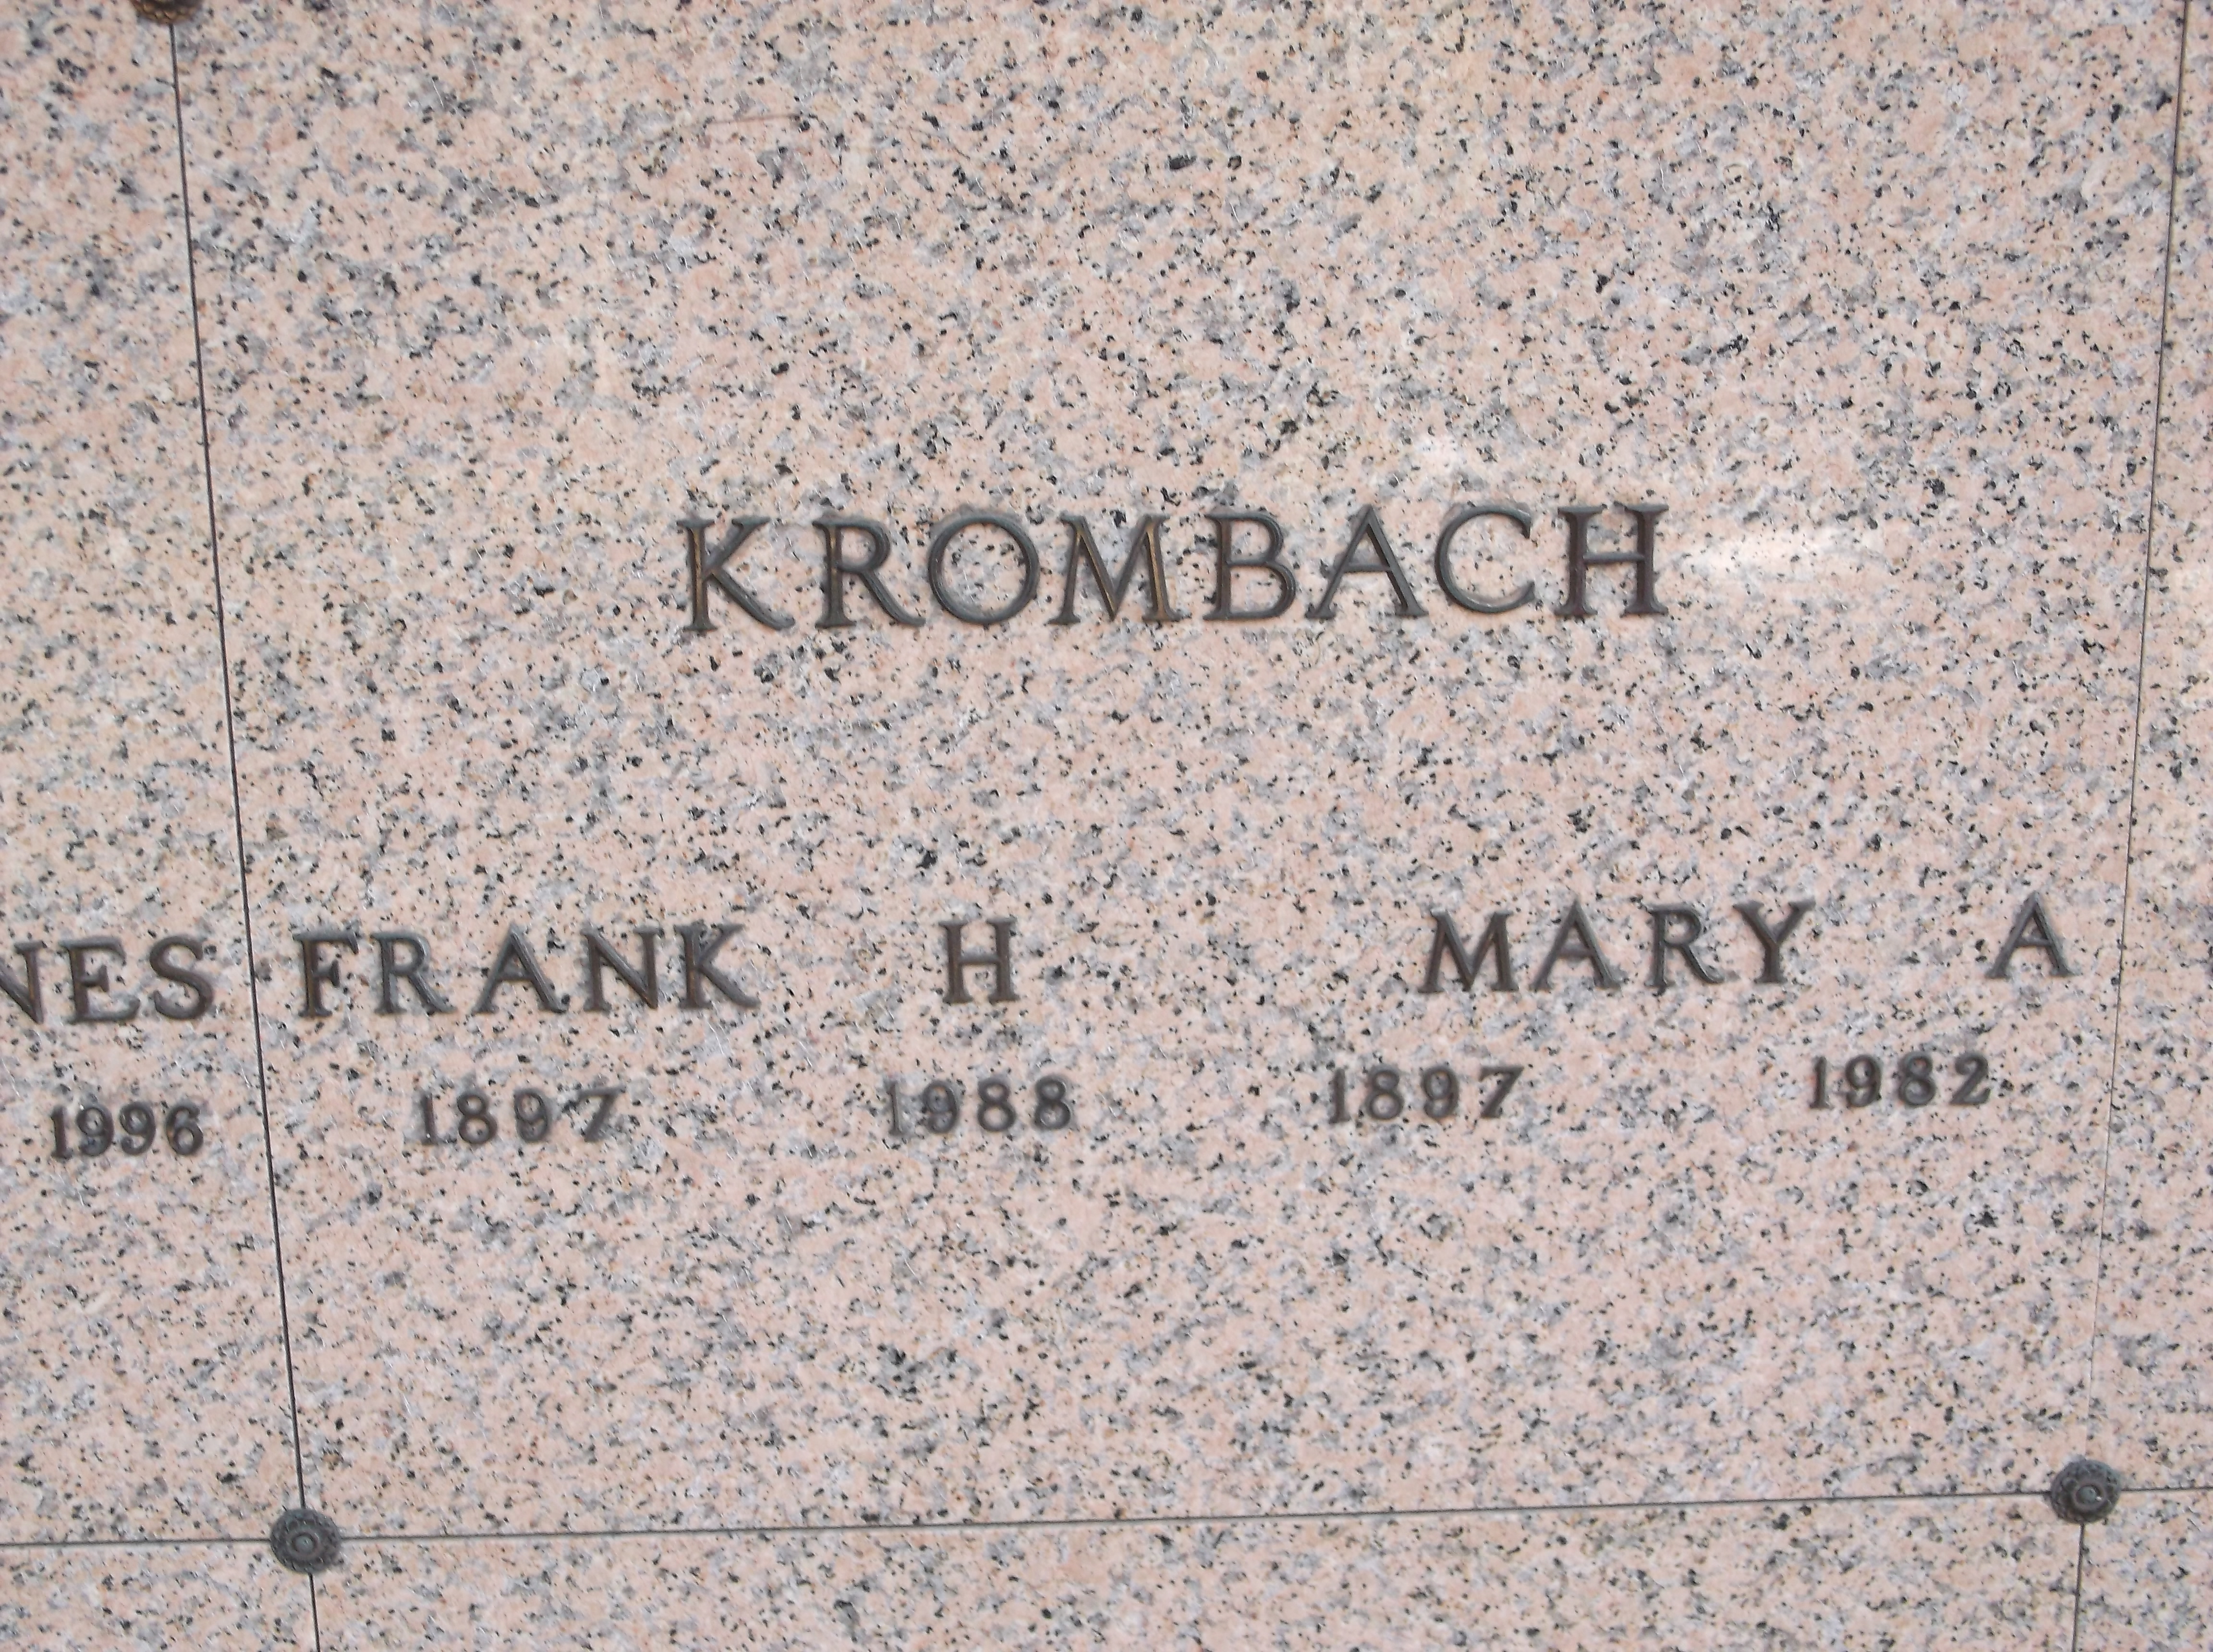 Mary A Krombach